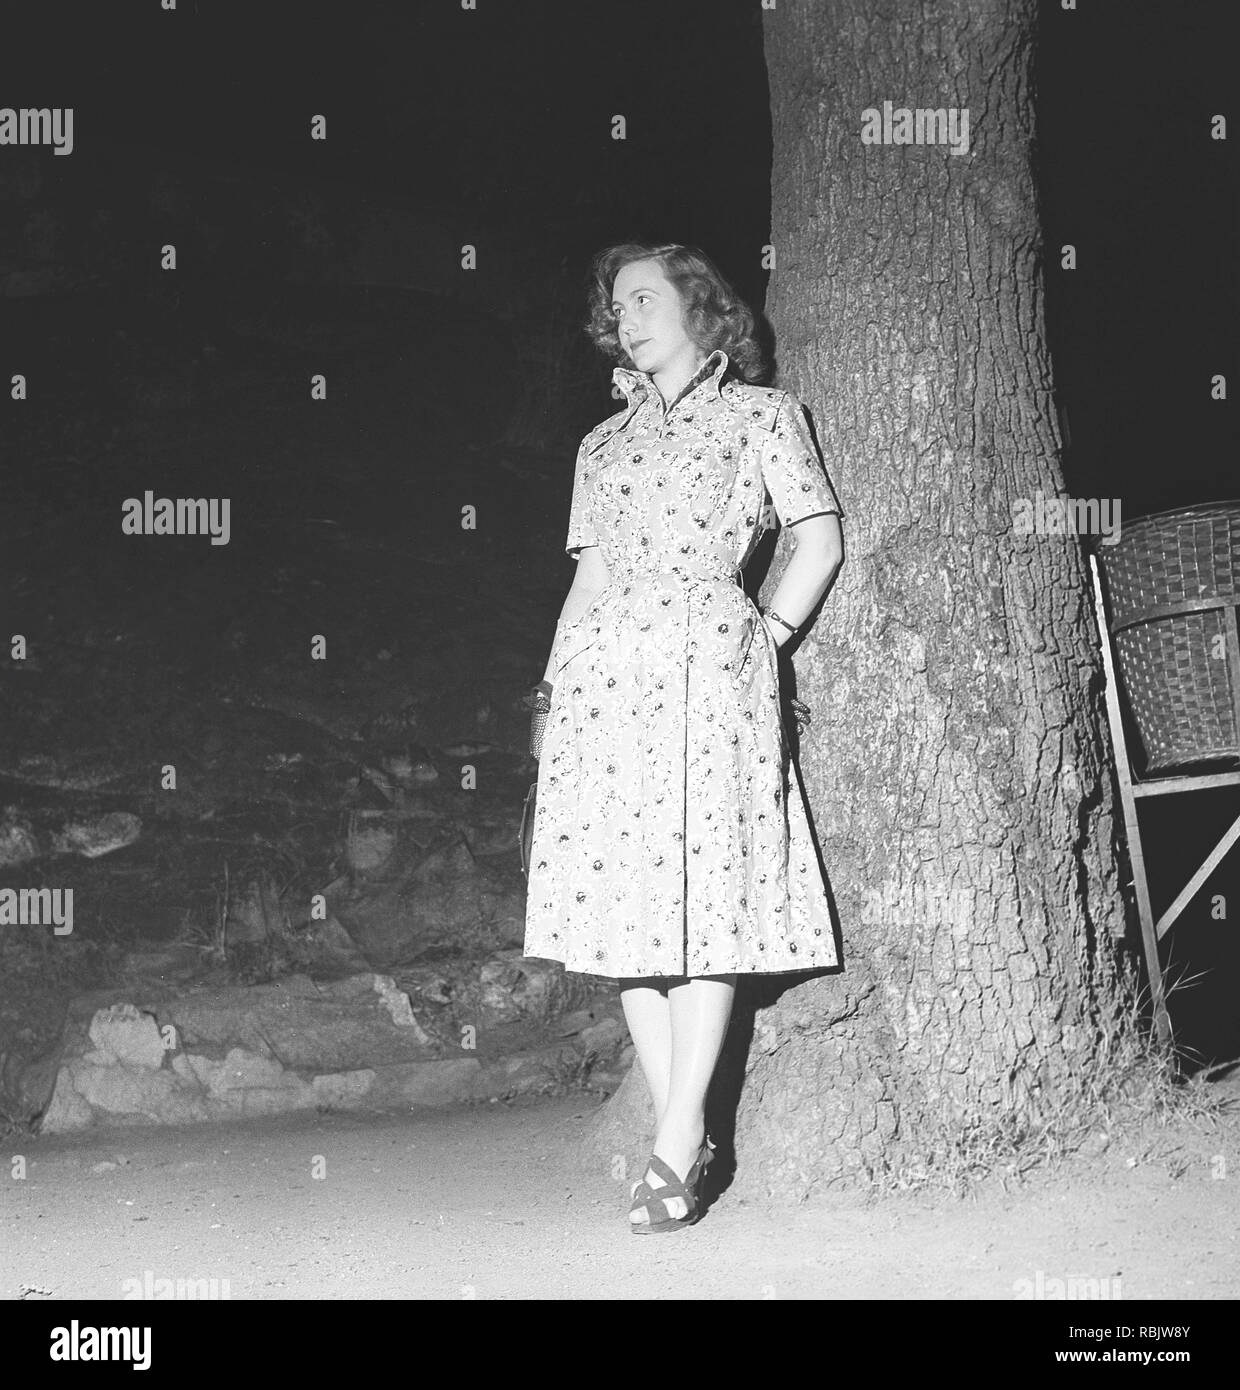 Tanz in den 1940er Jahren. Eine junge Frau an einem Tanz Veranstaltung stehen und warten für sich selbst, vielleicht warten auf ihren Partner oder einfach sich durch ihr Datum. Foto Kristoffersson Ref AZ 45-7. Schweden 1940 Stockfoto